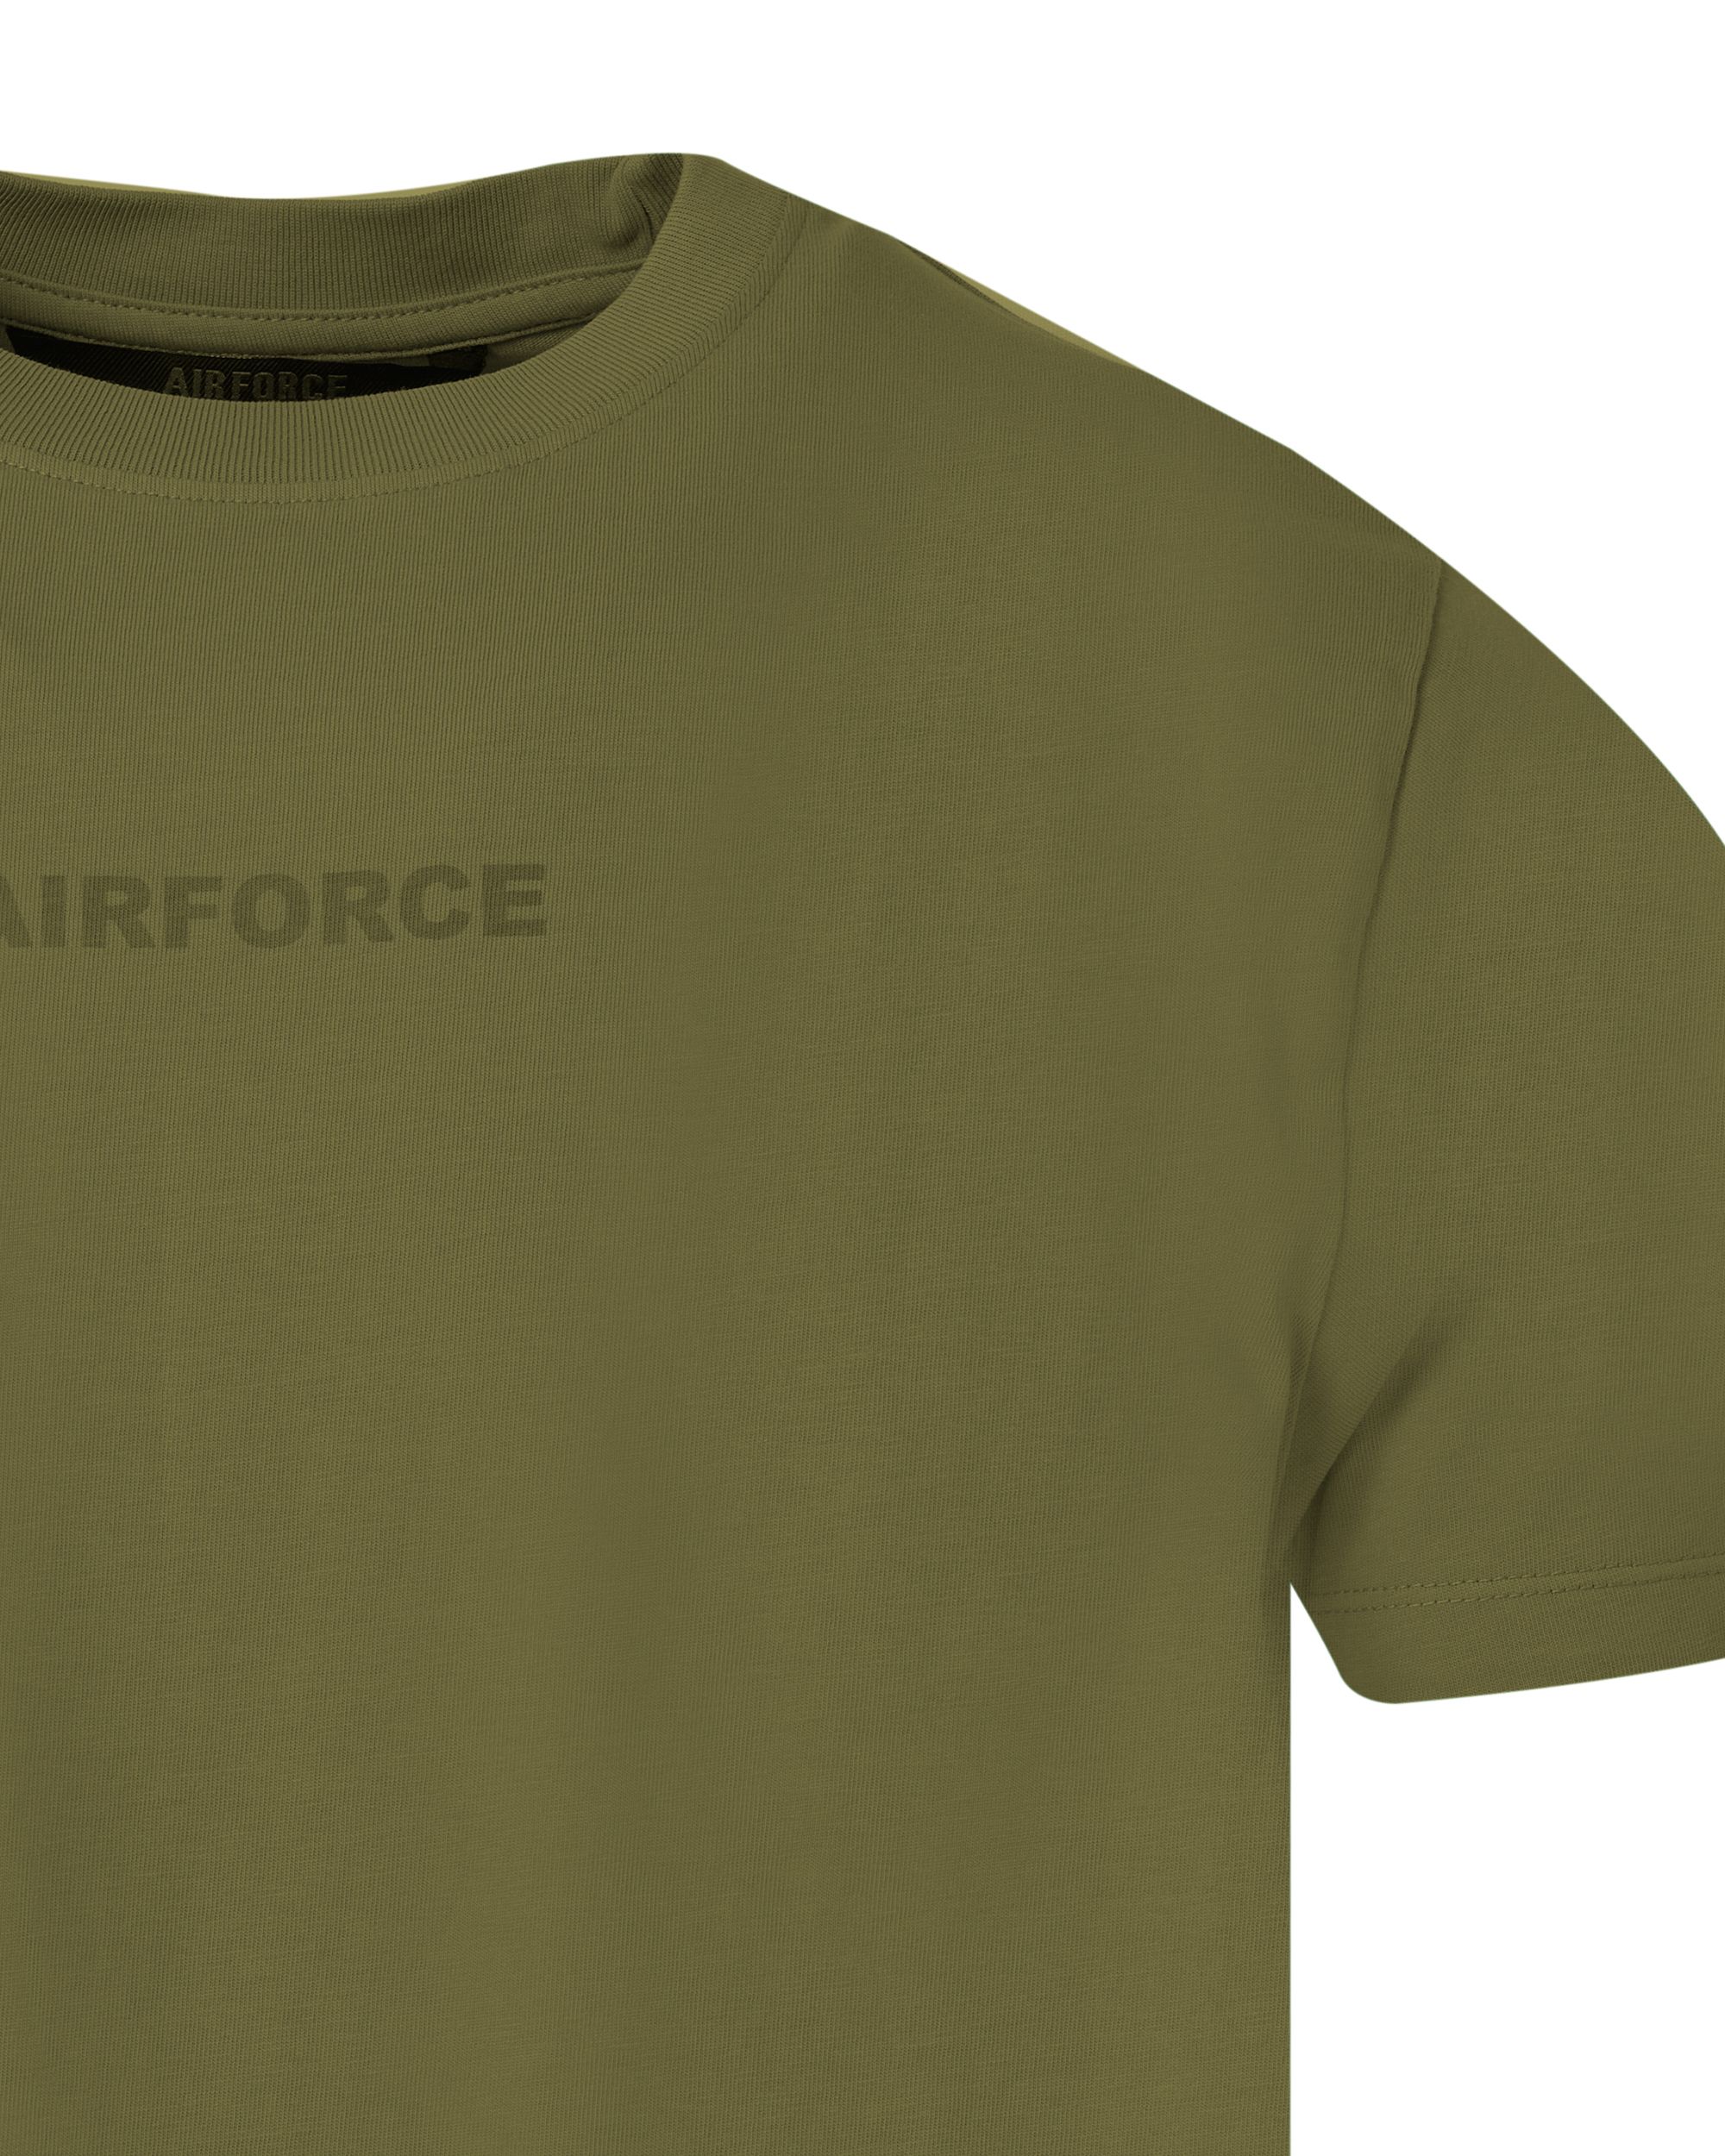 Airforce T-shirt KM Groen 083291-001-L